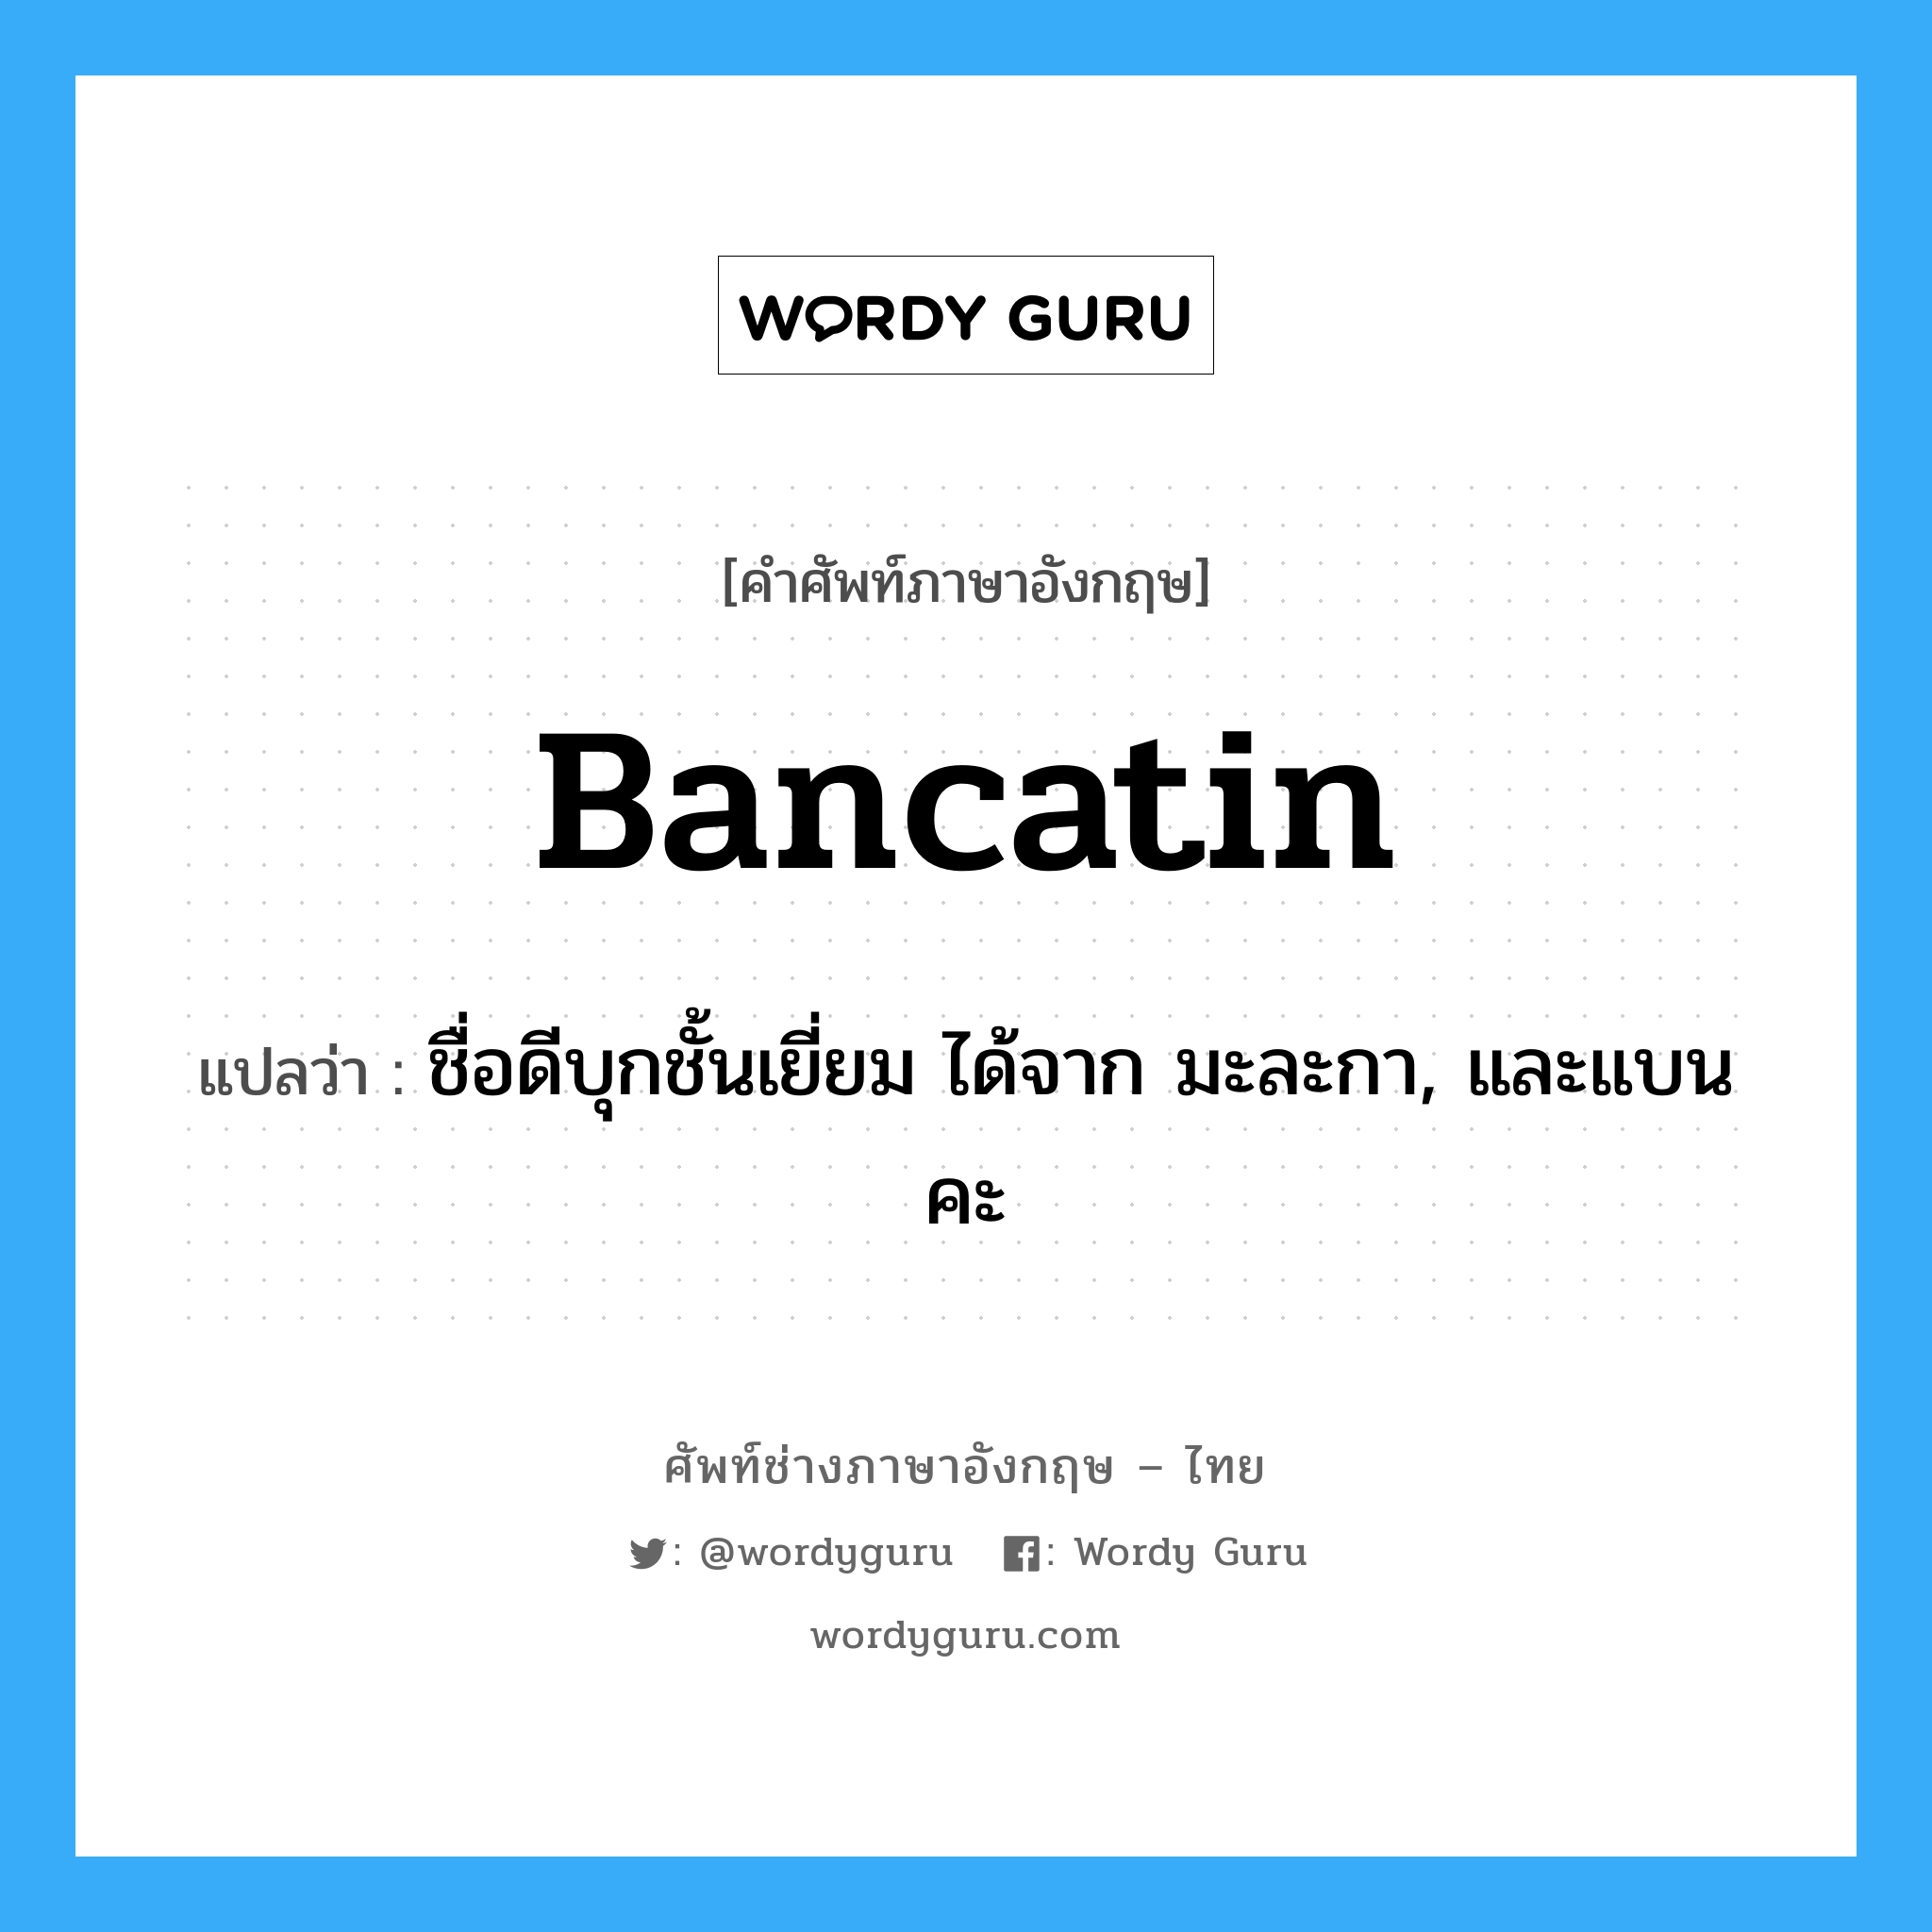 Bancatin แปลว่า?, คำศัพท์ช่างภาษาอังกฤษ - ไทย Bancatin คำศัพท์ภาษาอังกฤษ Bancatin แปลว่า ชื่อดีบุกชั้นเยี่ยม ได้จาก มะละกา, และแบนคะ